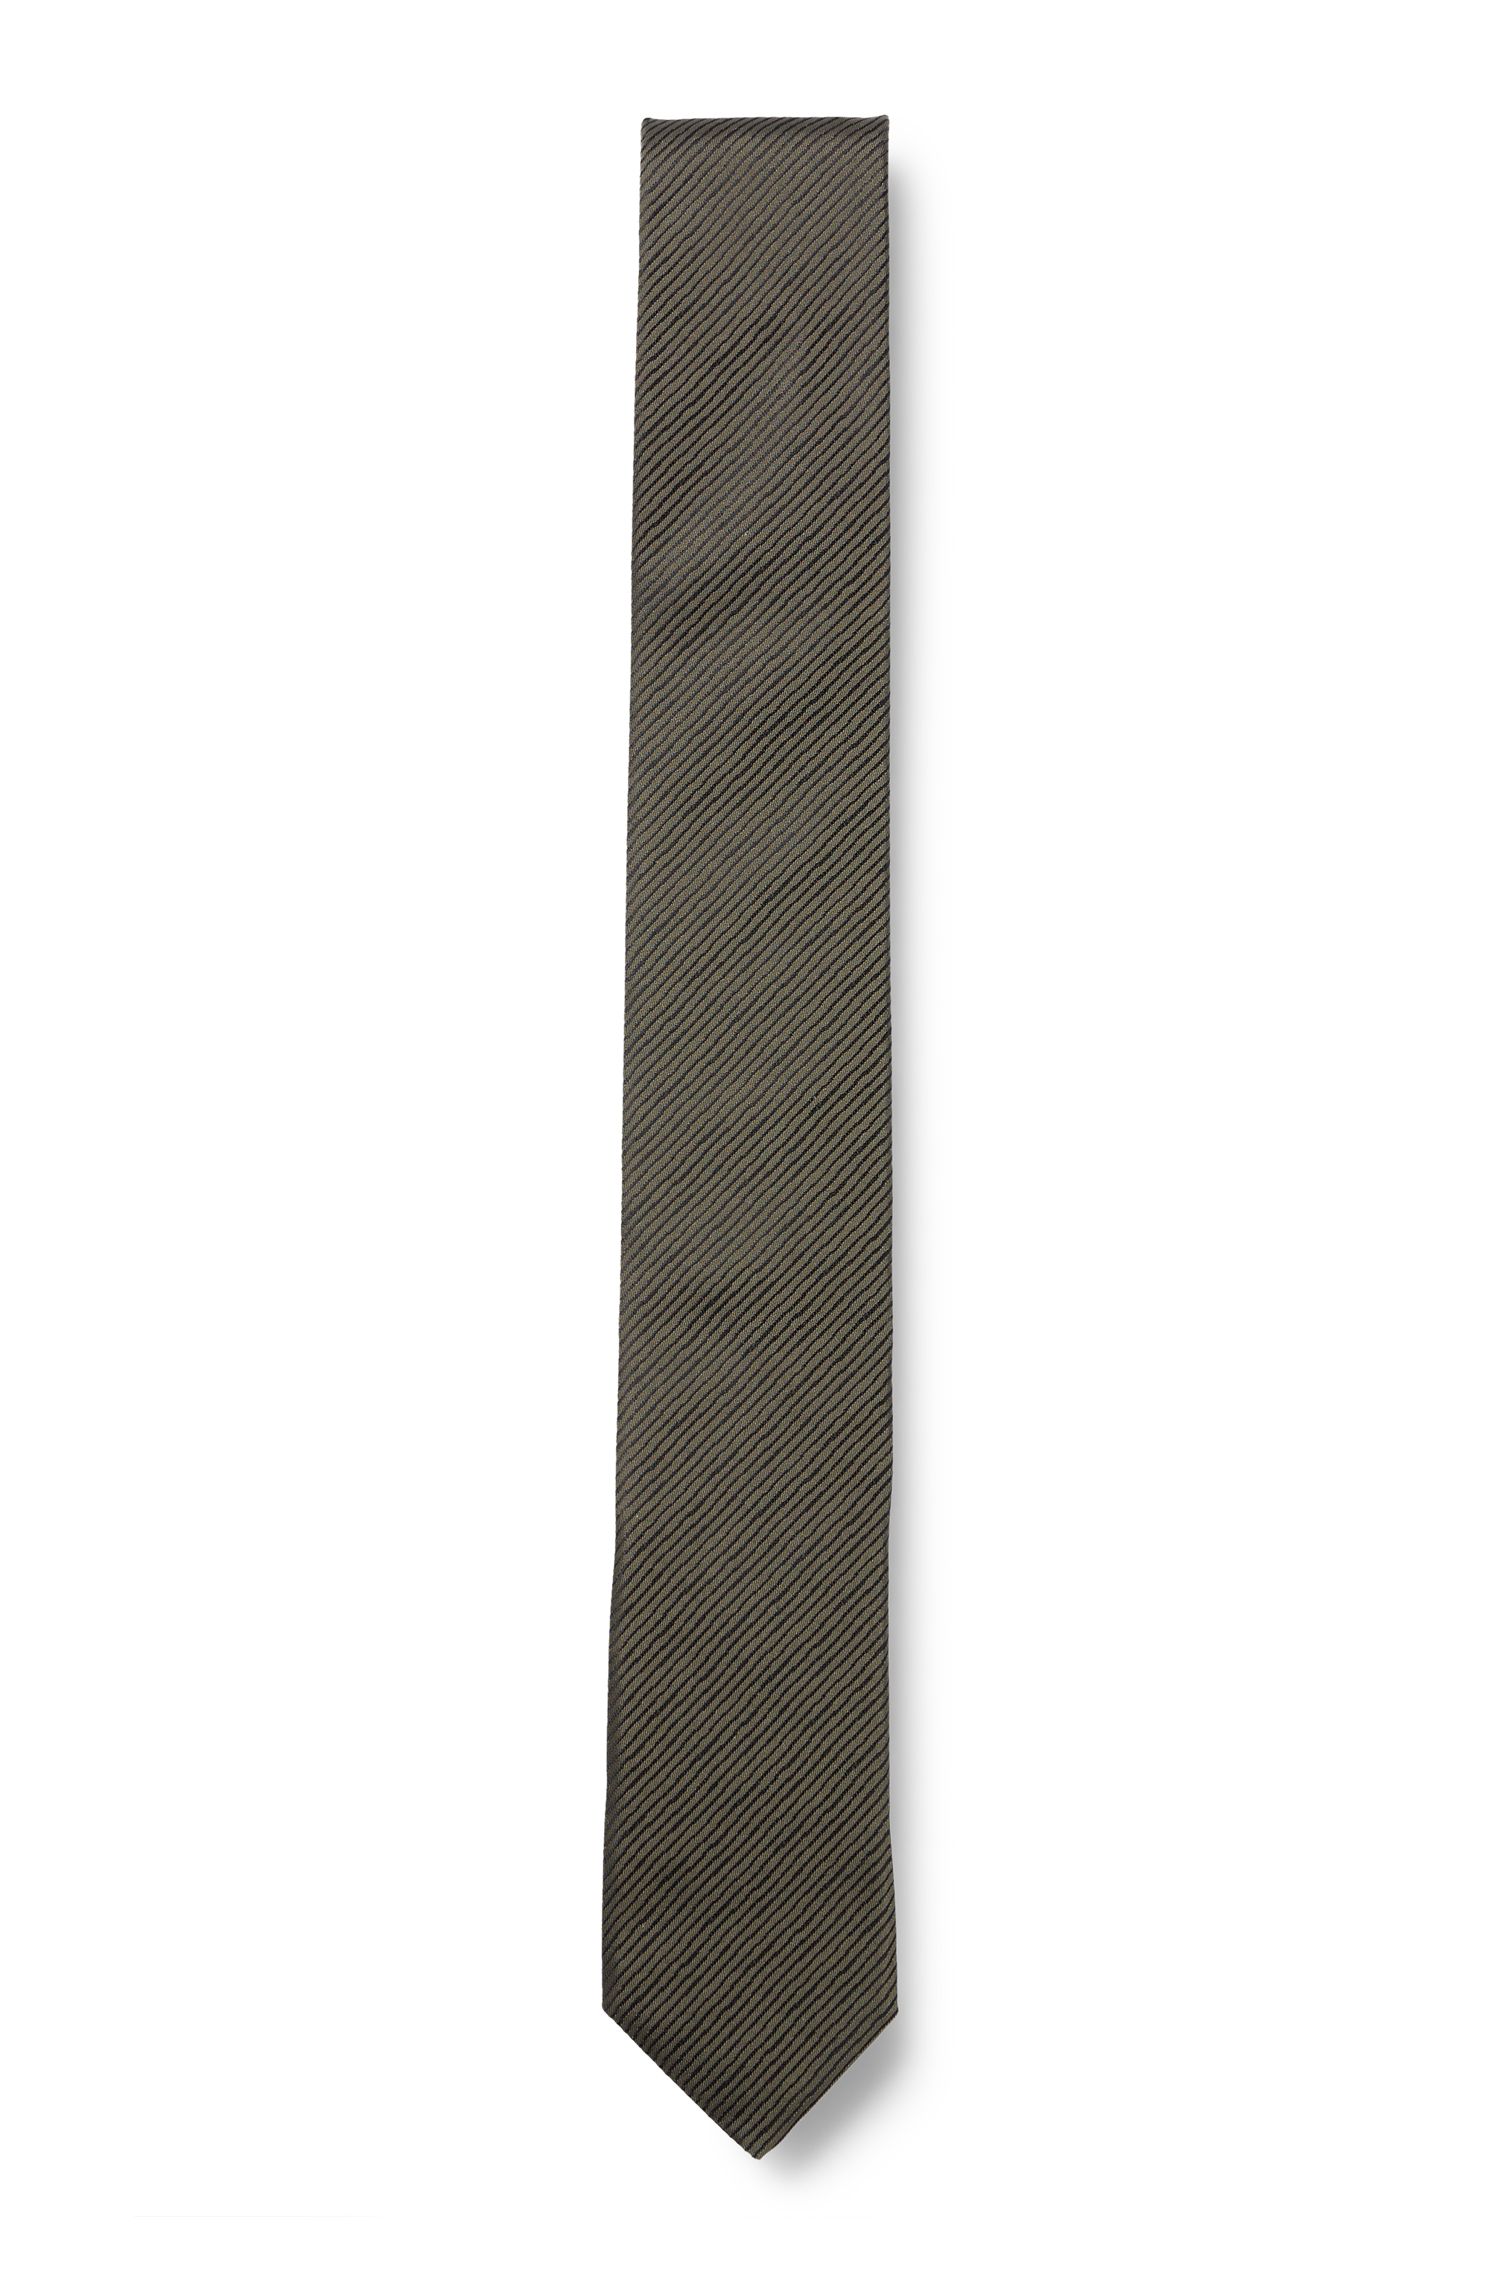 通体斜条纹领带